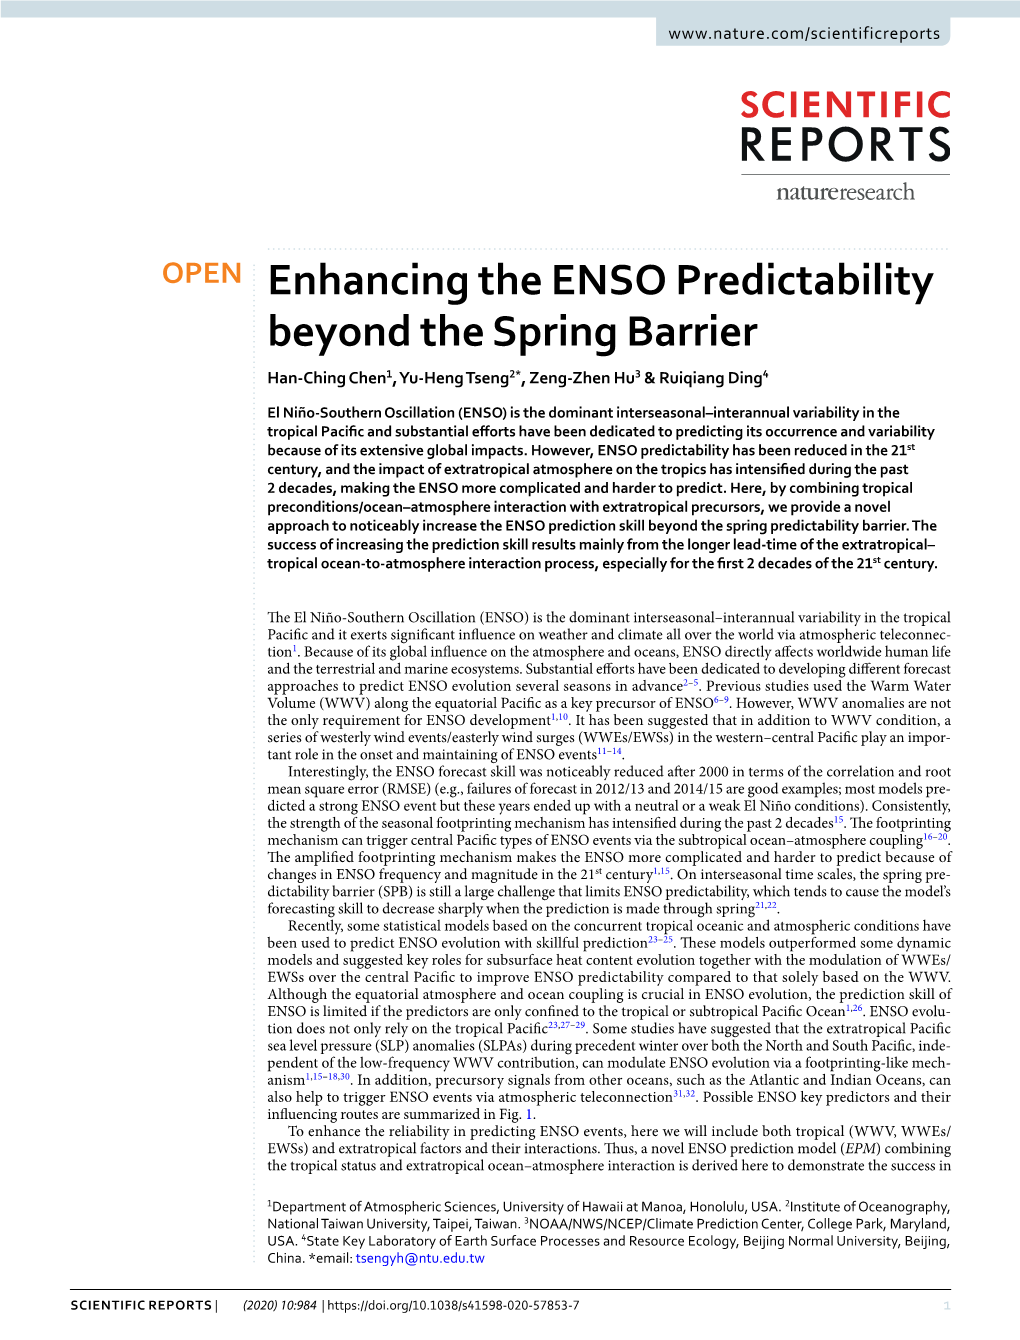 Enhancing the ENSO Predictability Beyond the Spring Barrier Han-Ching Chen1, Yu-Heng Tseng2*, Zeng-Zhen Hu3 & Ruiqiang Ding4